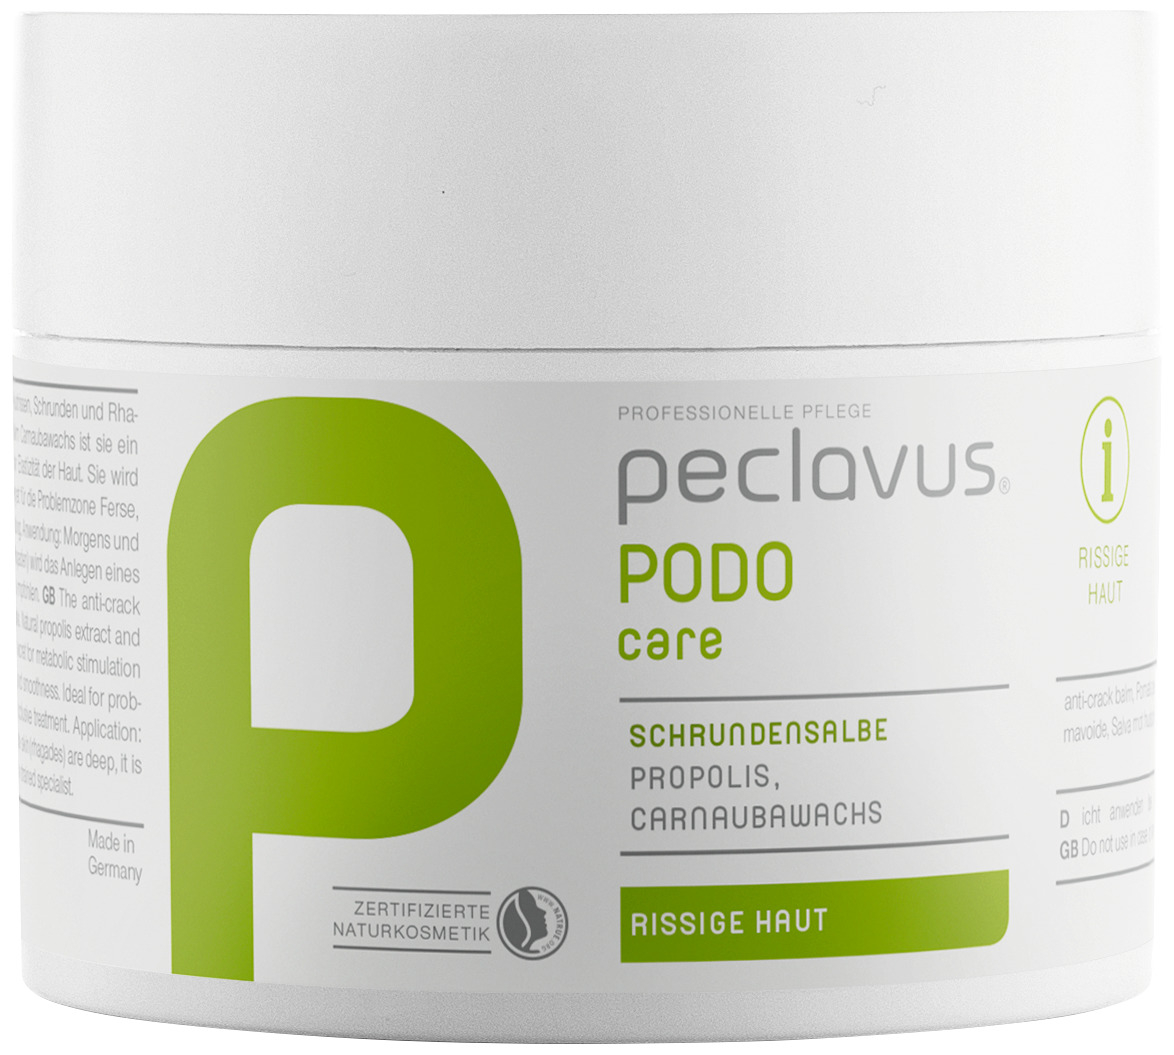 Peclavus PODOcare Schrundensalbe | 250 ml